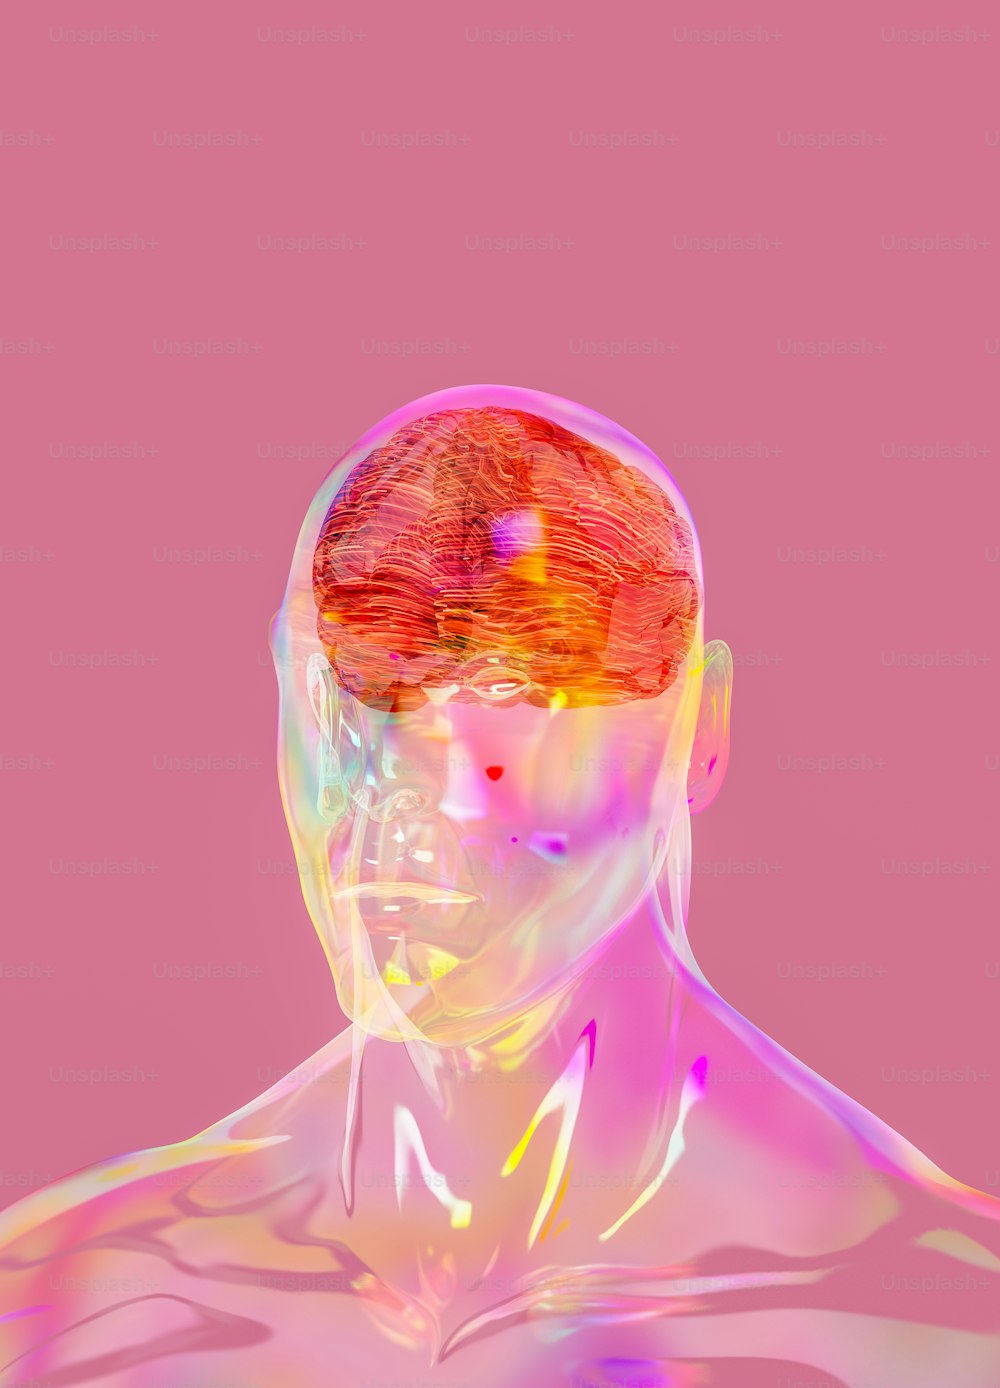 La testa di un uomo è mostrata con uno sfondo rosa